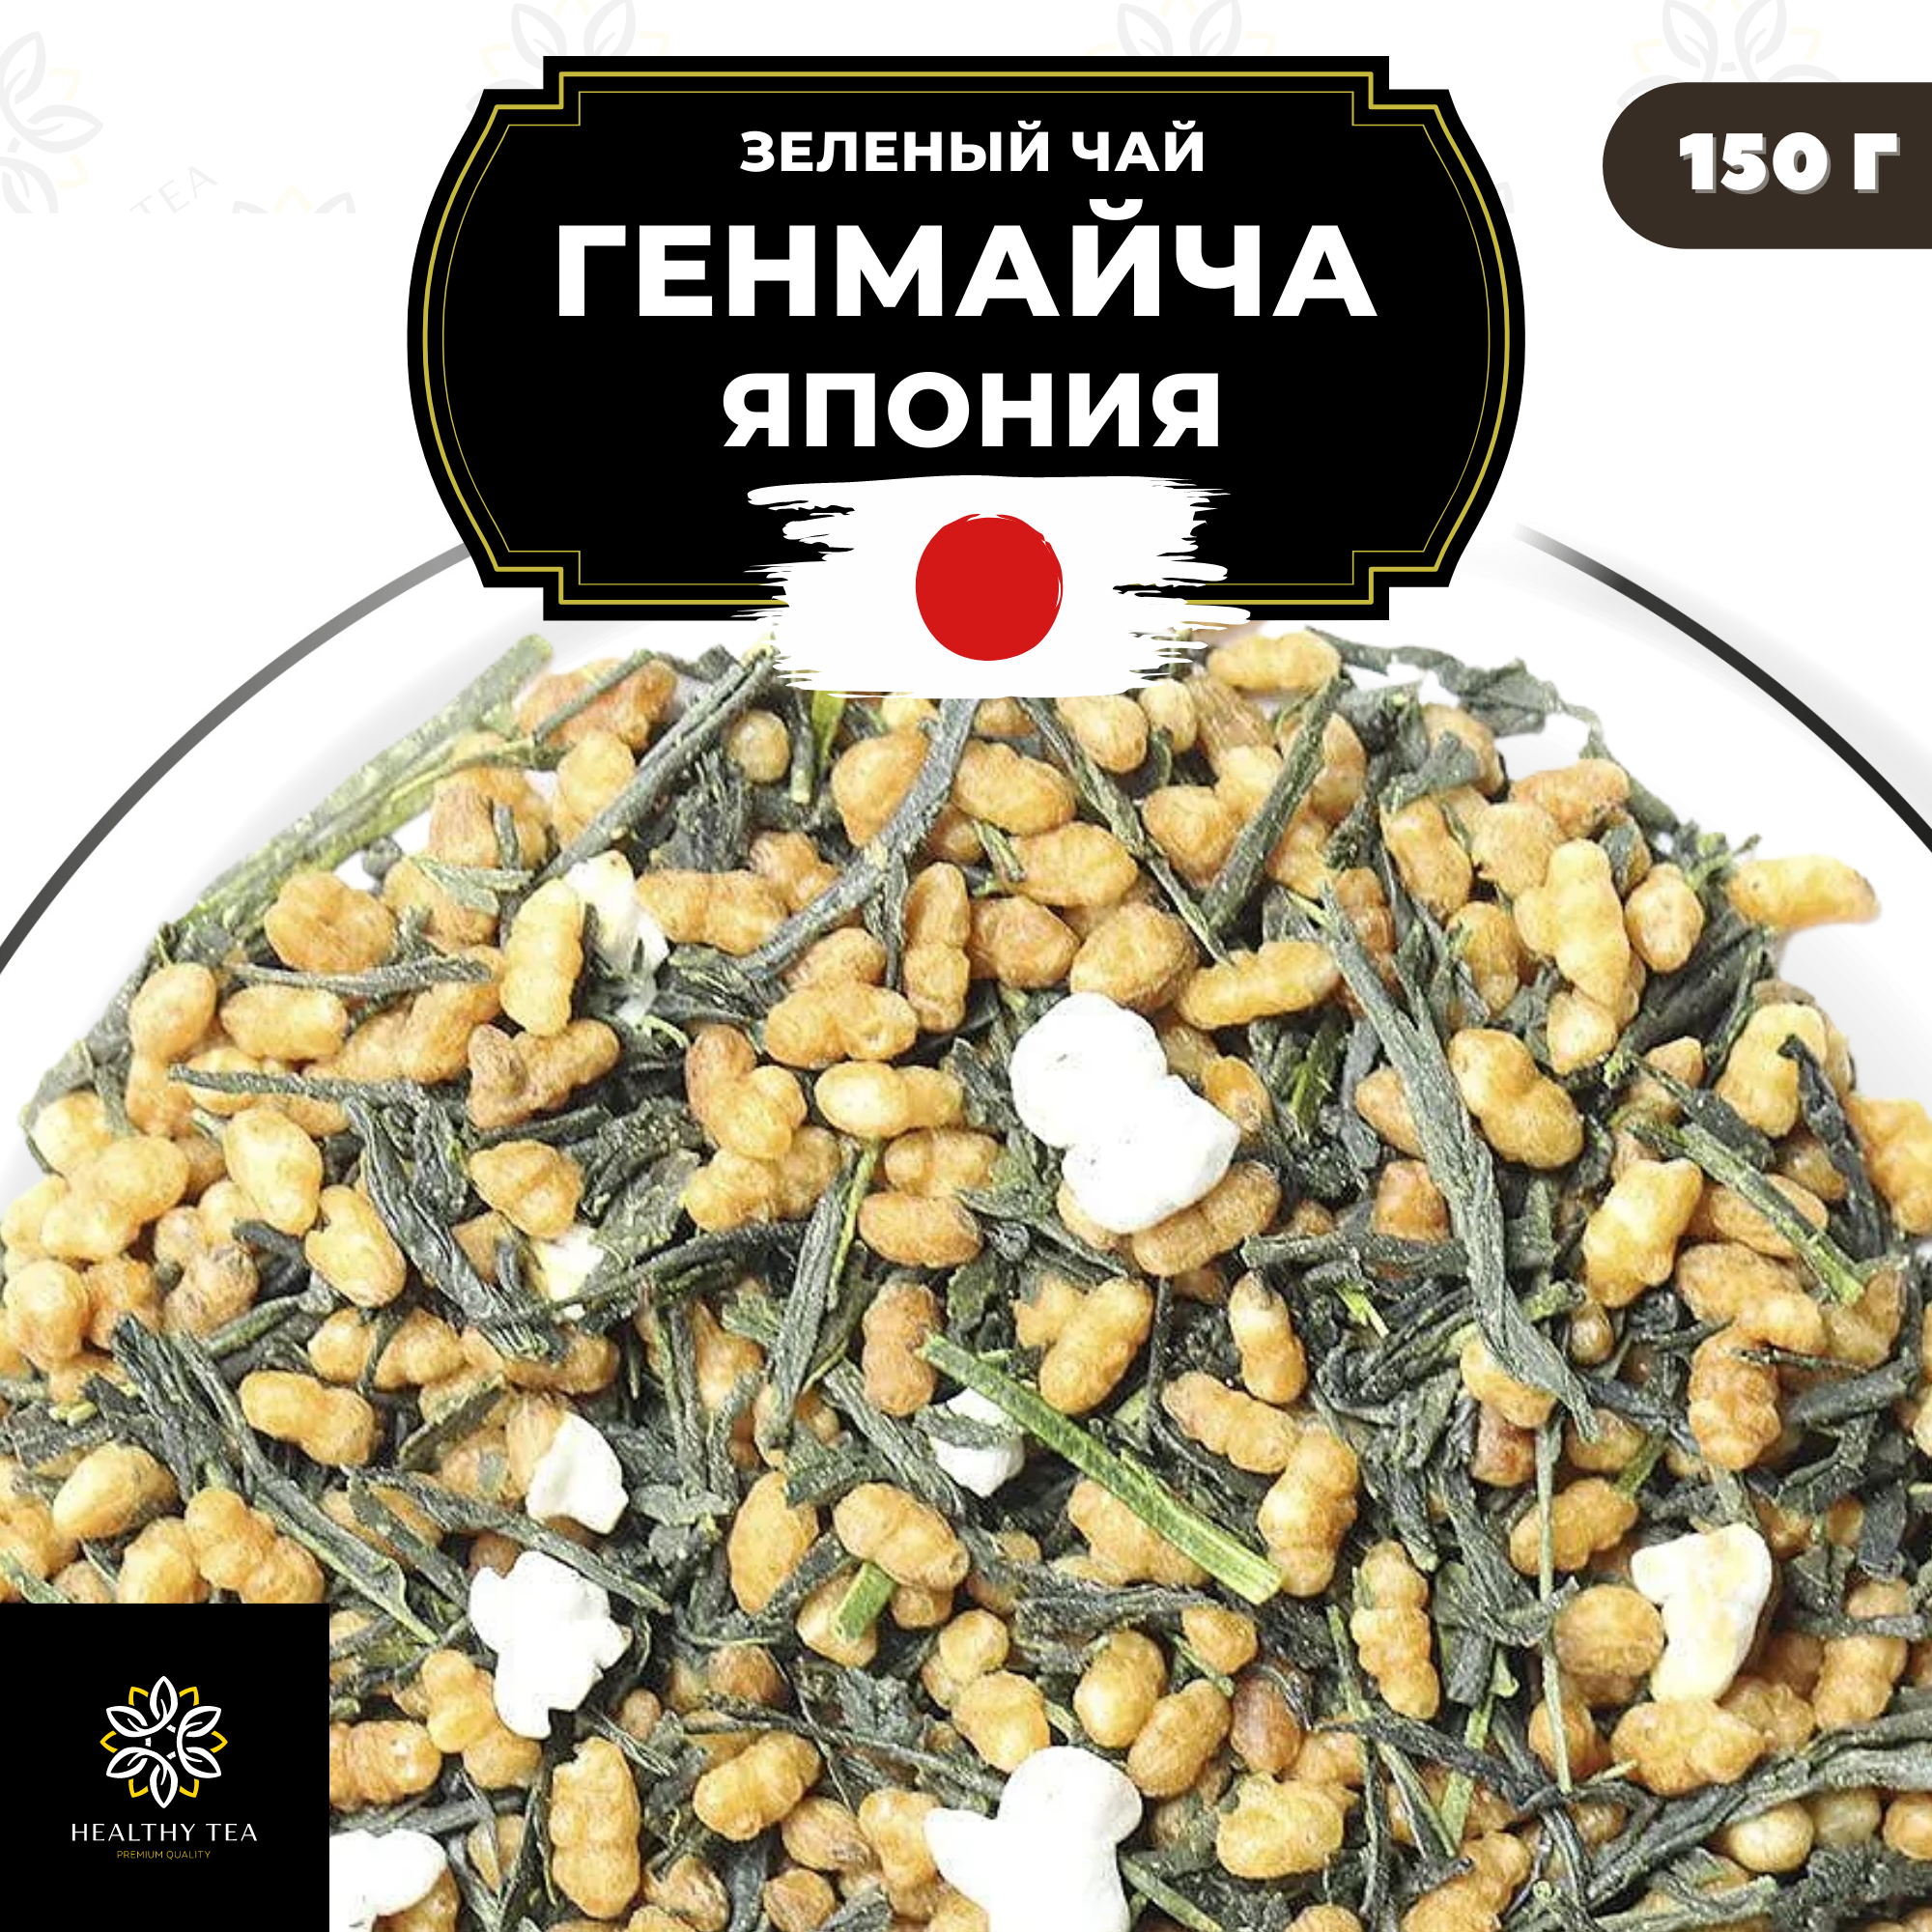 Японский зеленый чай без добавок Генмайча (Япония) Полезный чай / HEALTHY TEA, 150 г